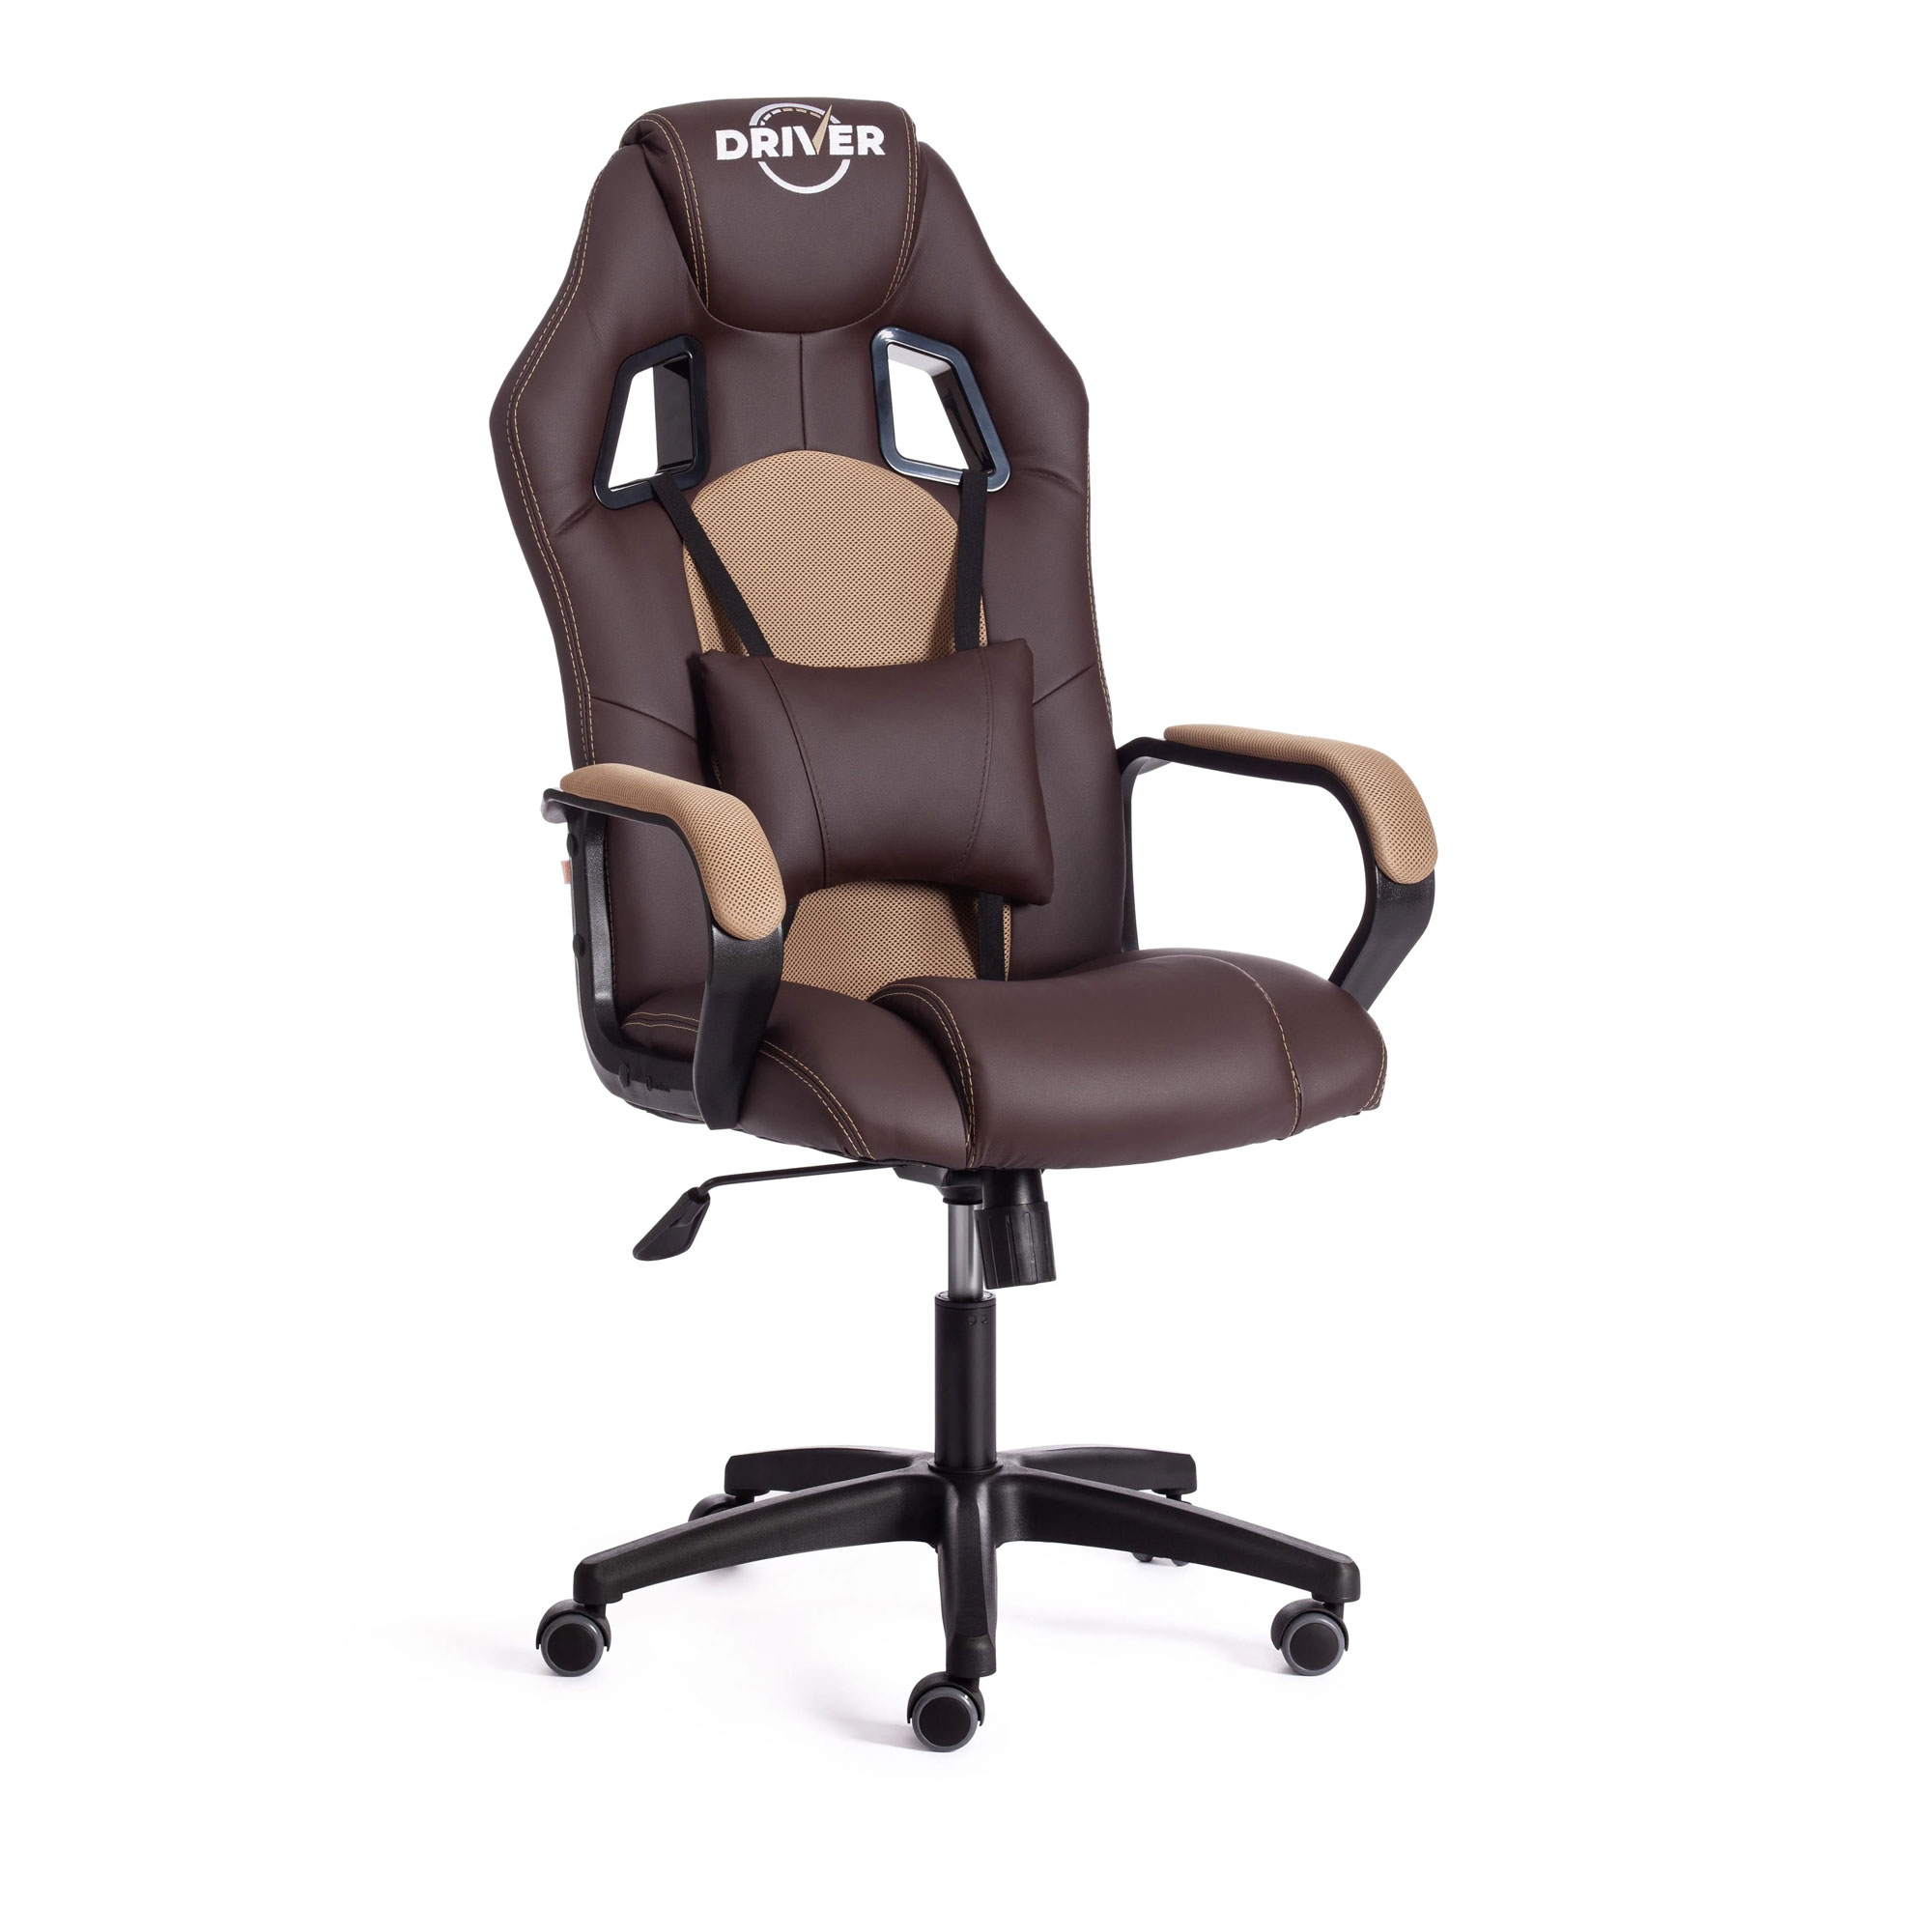 Кресло компьютерное TC Driver искусственная кожа коричневое с бронзовым 55х49х126 см кресло компьютерное tc driver искусственная кожа чёрное с синим 55х49х126 см